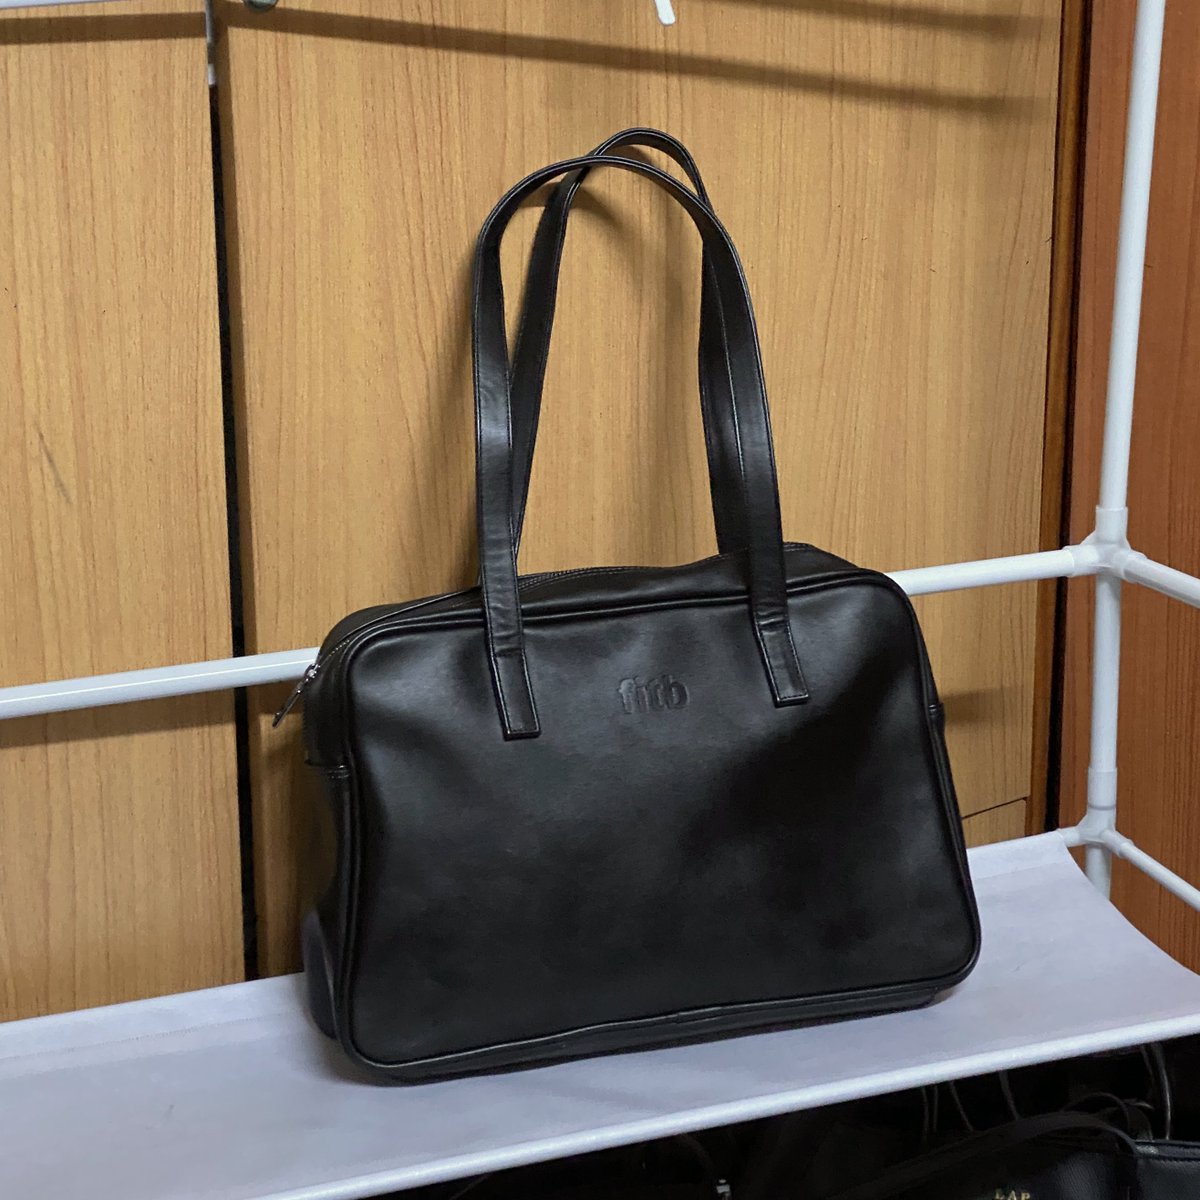 ✨ ส่งต่อ ✨ กระเป๋าเกาหลีแบรนด์ FILLINTHEBLANK สี Black สีนี้สวยมั้ก ๆ ค่ะหายากด้วยยย 🥹🖤
📍สภาพดี📍
🎀 ราคา 750฿ รวมส่ง 🎀
🌈 สนใจสามารถดูเพิ่มเติมได้ค่า 🌈
#กระเป๋ามือสอง #ส่งต่อกระเป๋า #พรีออเดอร์เกาหลี #กระเป๋ามือสองสภาพดี #ส่งต่อกระเป๋ามือสอง #พรีเกาหลี #เสื้อผ้ามือสอง